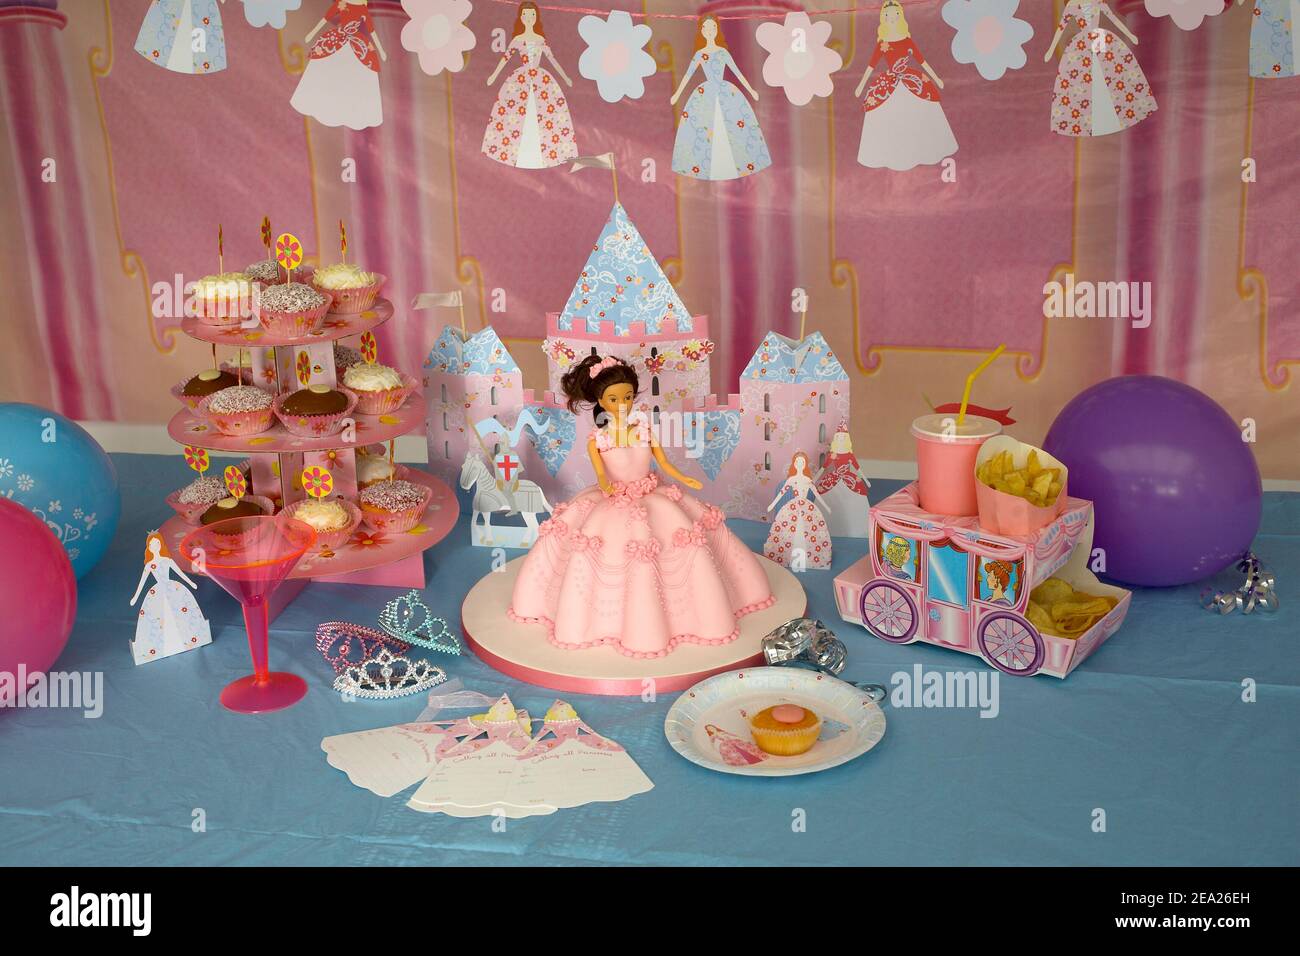 Fete D Anniversaire Pour Enfants Decorations De Fete Sur Le Theme De La Princesse Photo Stock Alamy